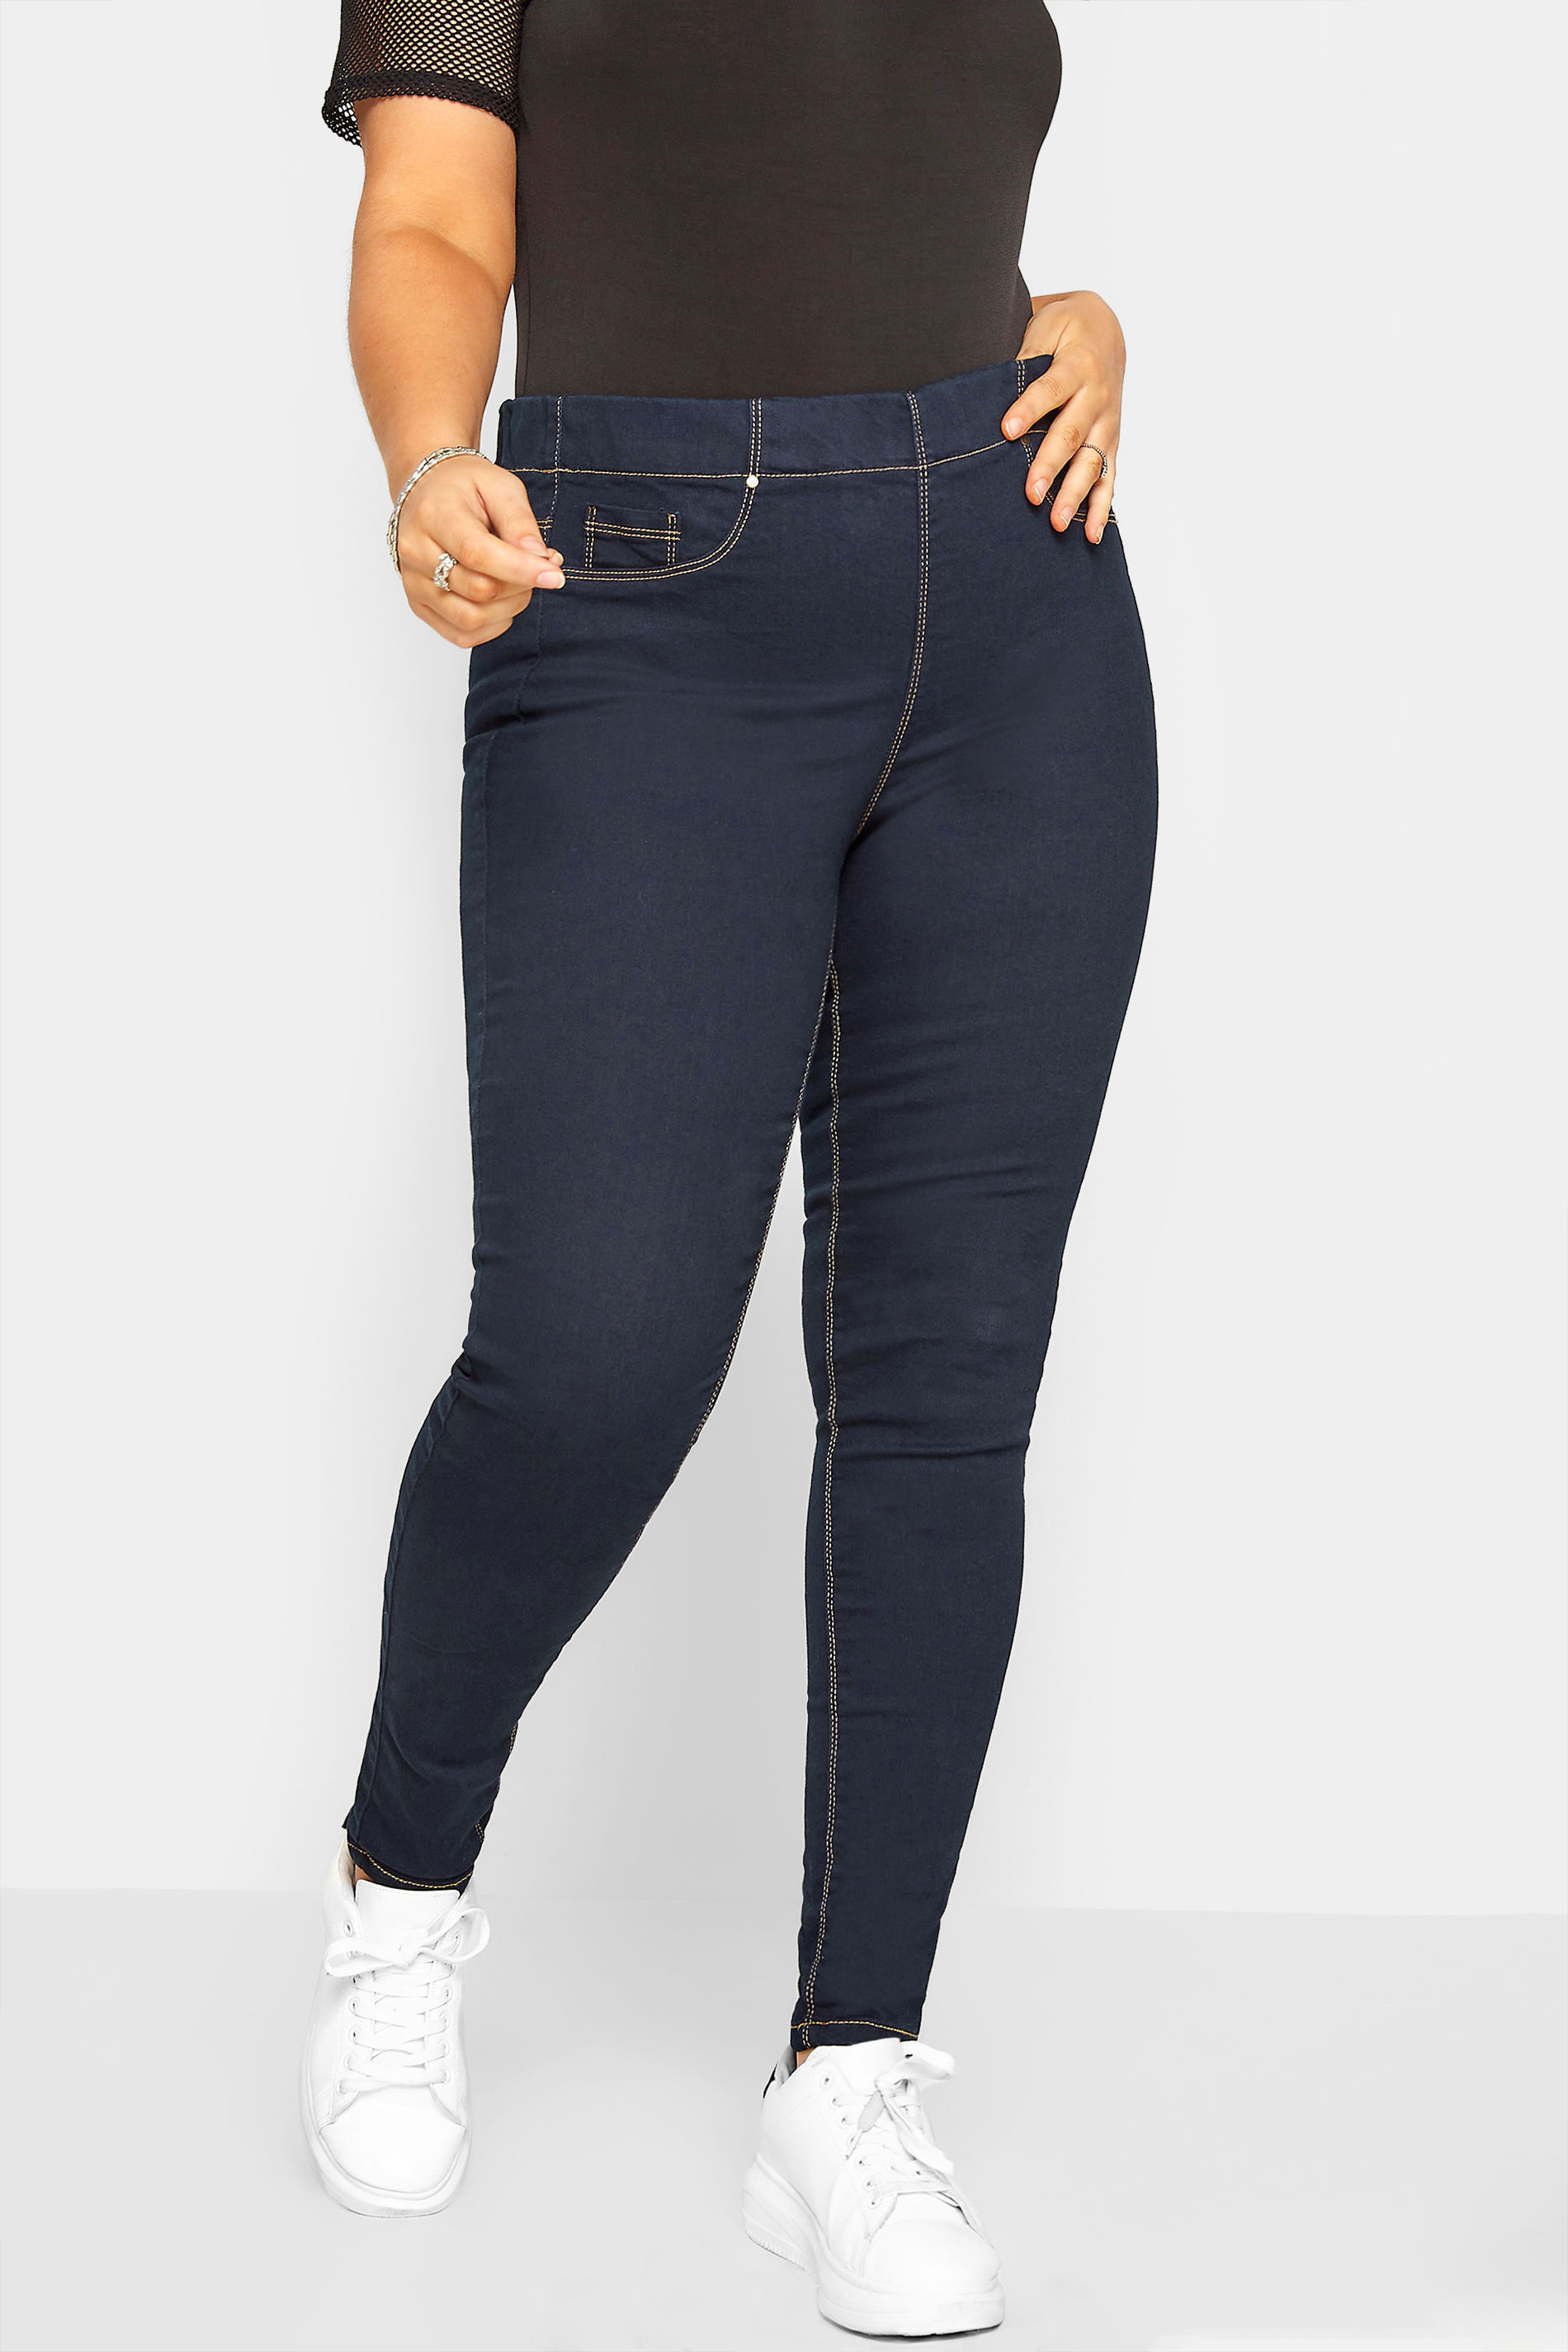 discount 71% Lefties Jeggings & Skinny & Slim WOMEN FASHION Jeans Strech Blue 34                  EU 